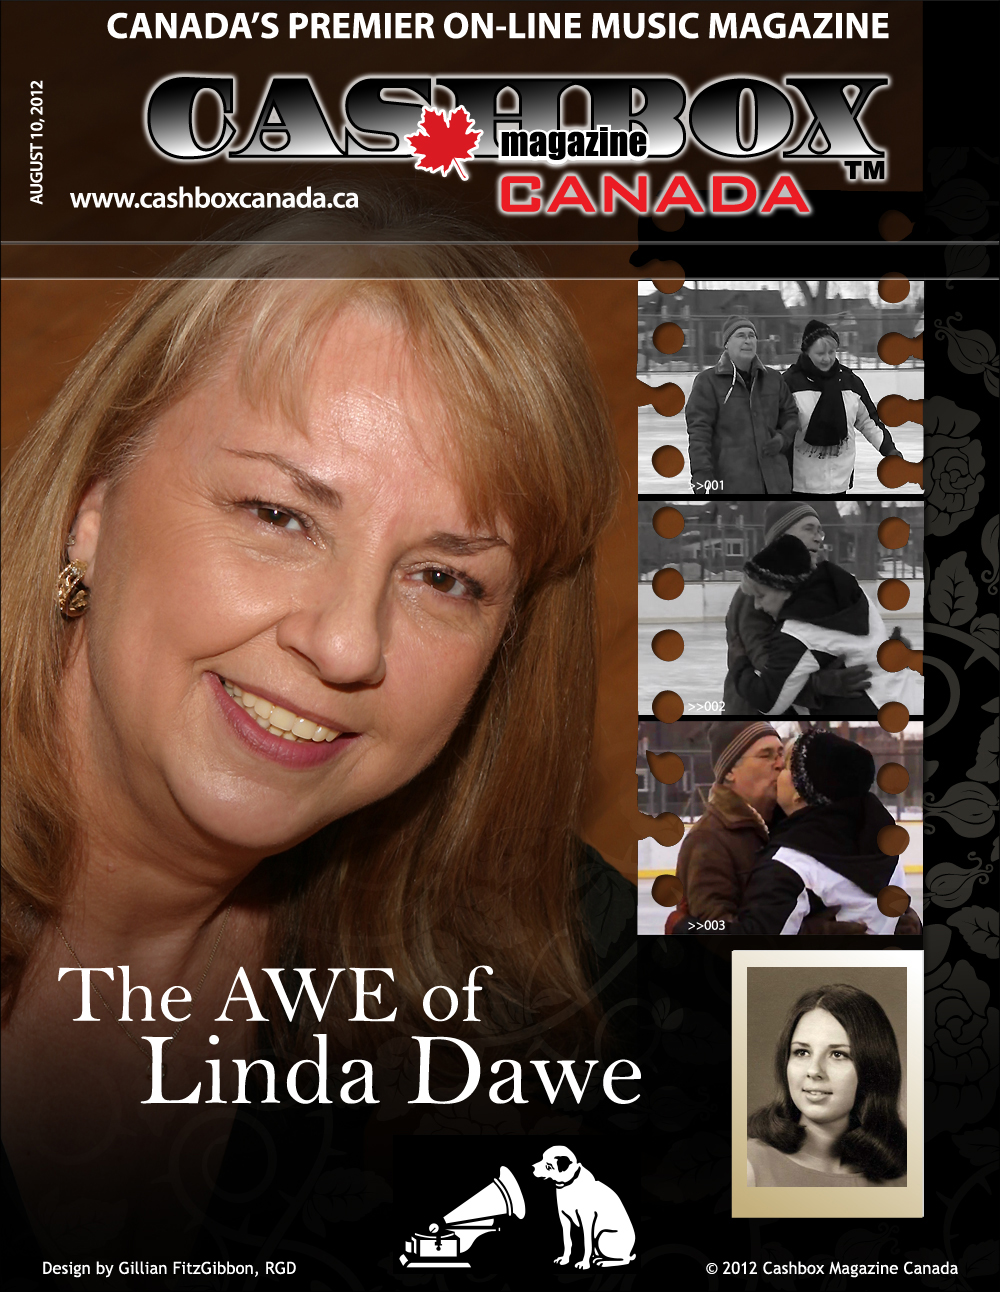 The Awe of Linda Dawe